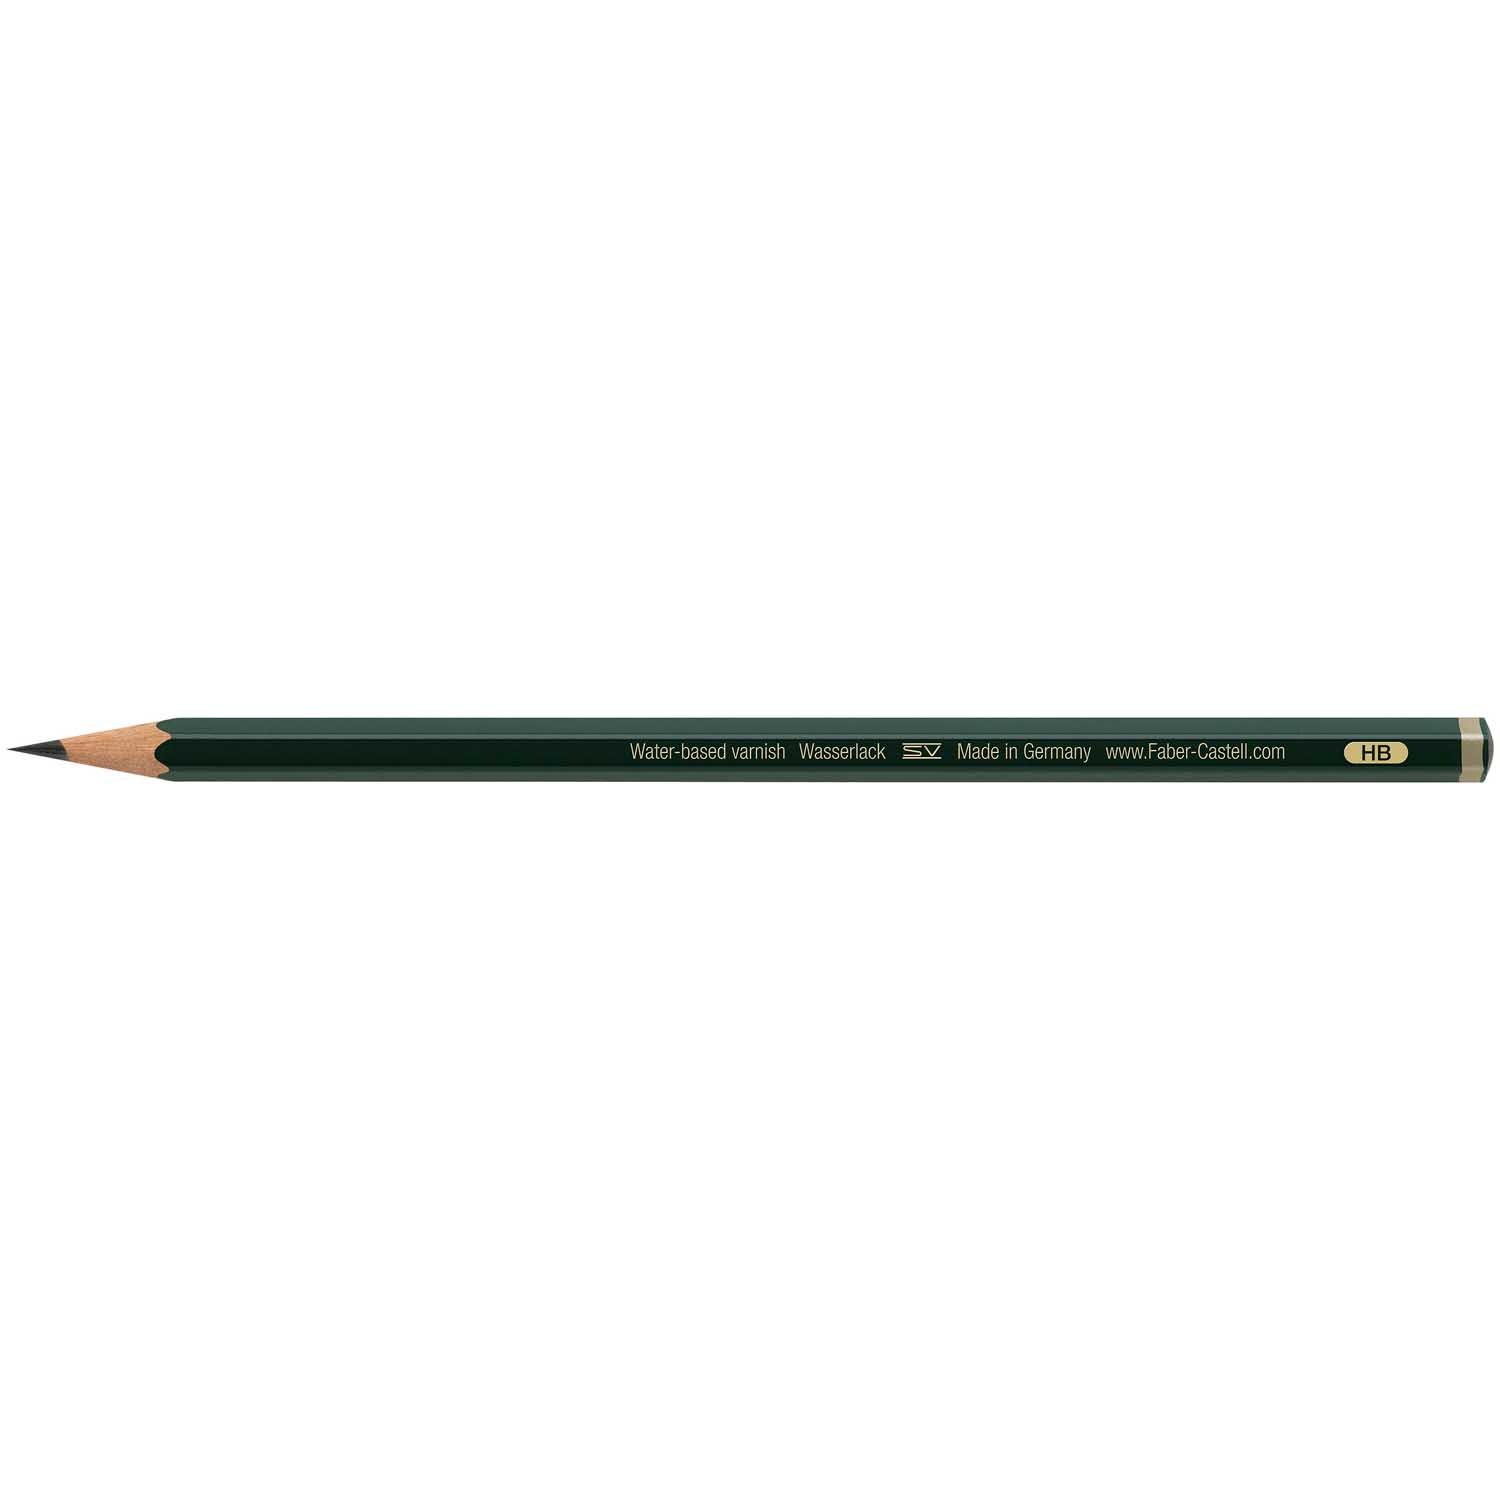 Castell 9000 Bleistift